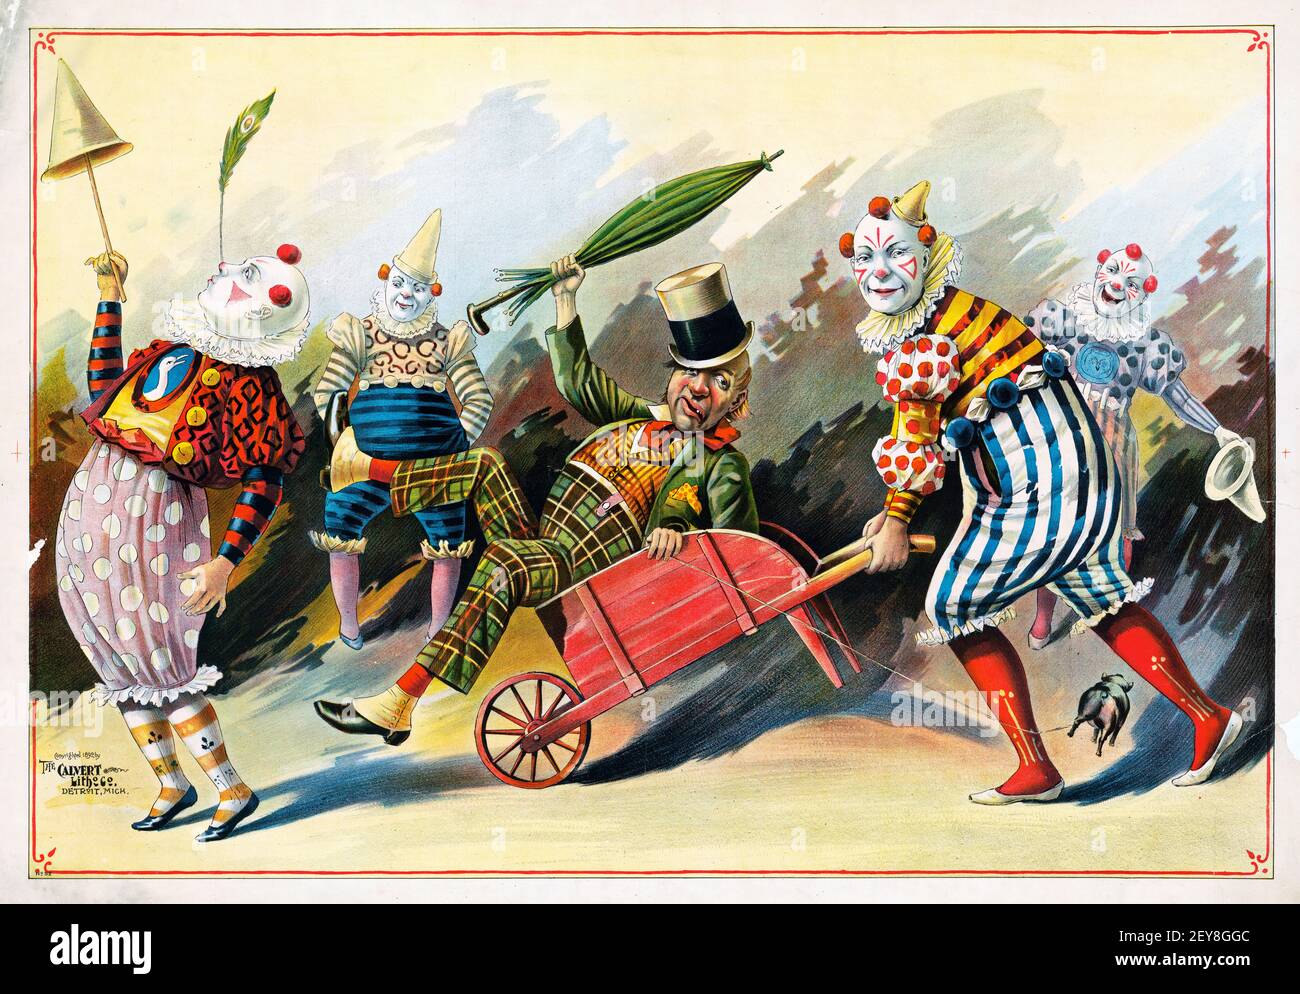 Komödie, Illustration von Clowns im Zirkus mit einer Schubkarre. Alt und vintage. Stockfoto